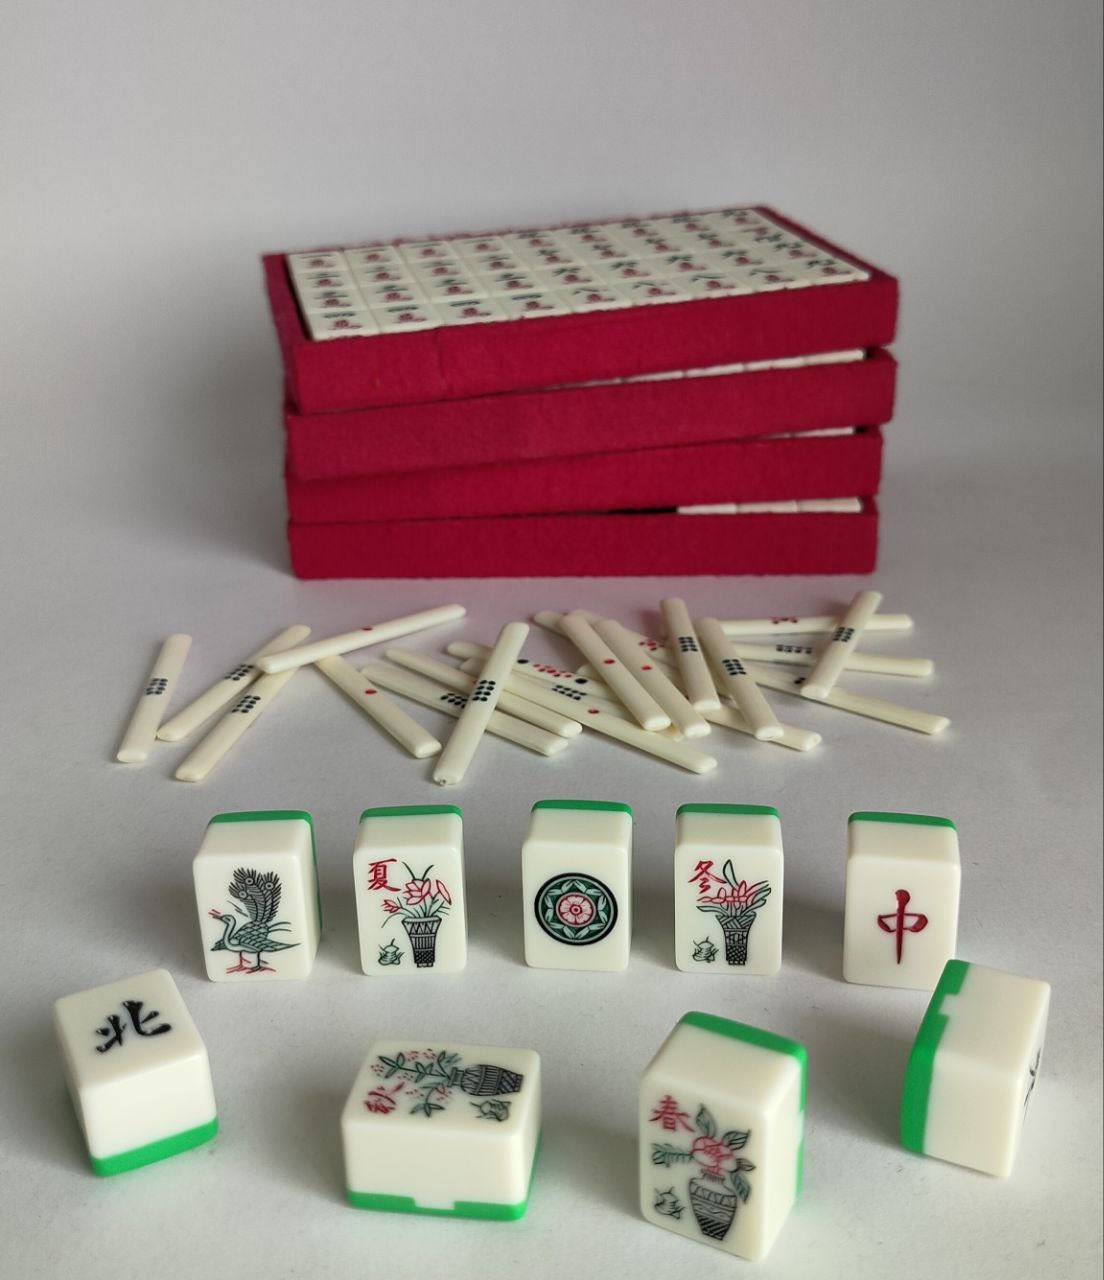 Mahjong – Gratis Mahjongg ohne Anmeldung spielen - Spiele - SZ